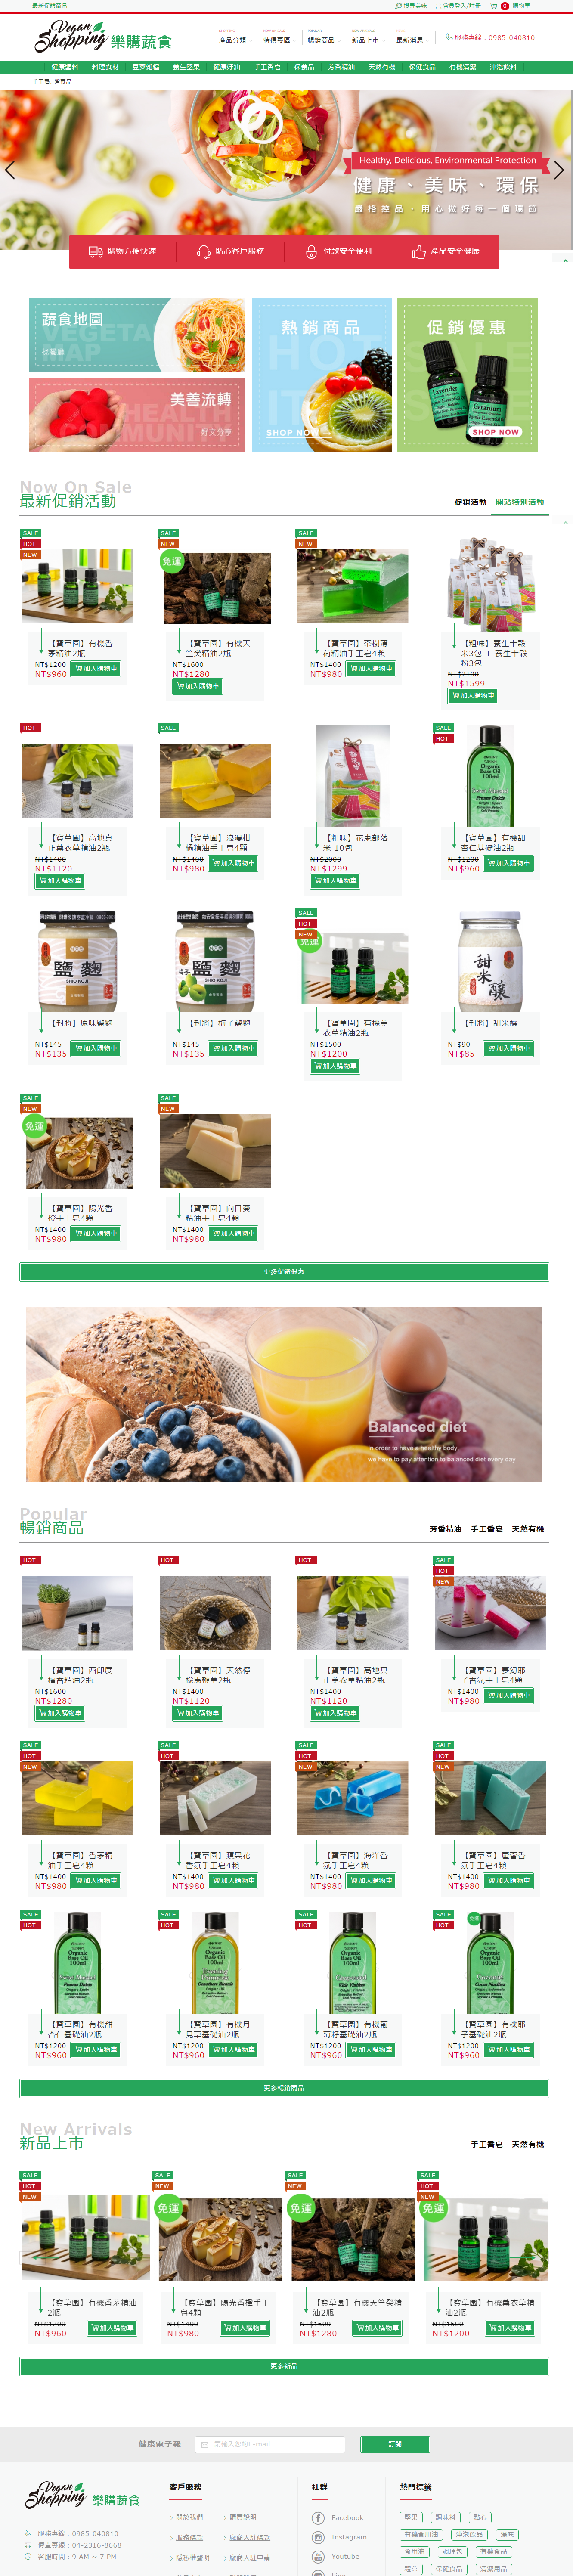 樂美康-素食購物網